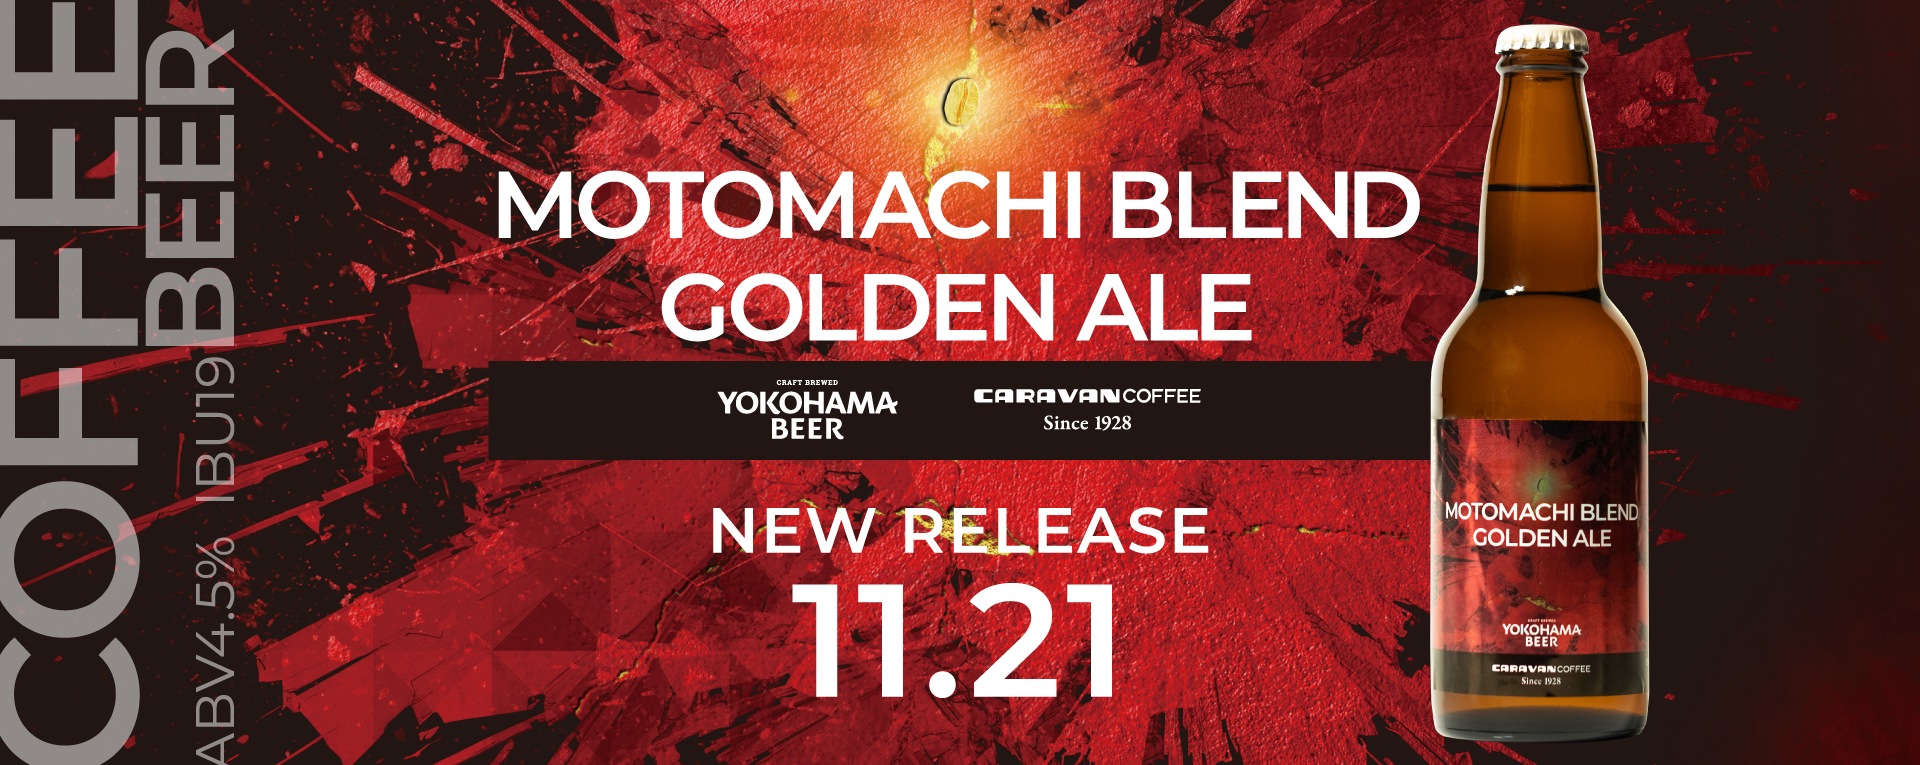 横浜ビールとのコラボビール「MOTOMACHI BLEND GOLDEN ALE」